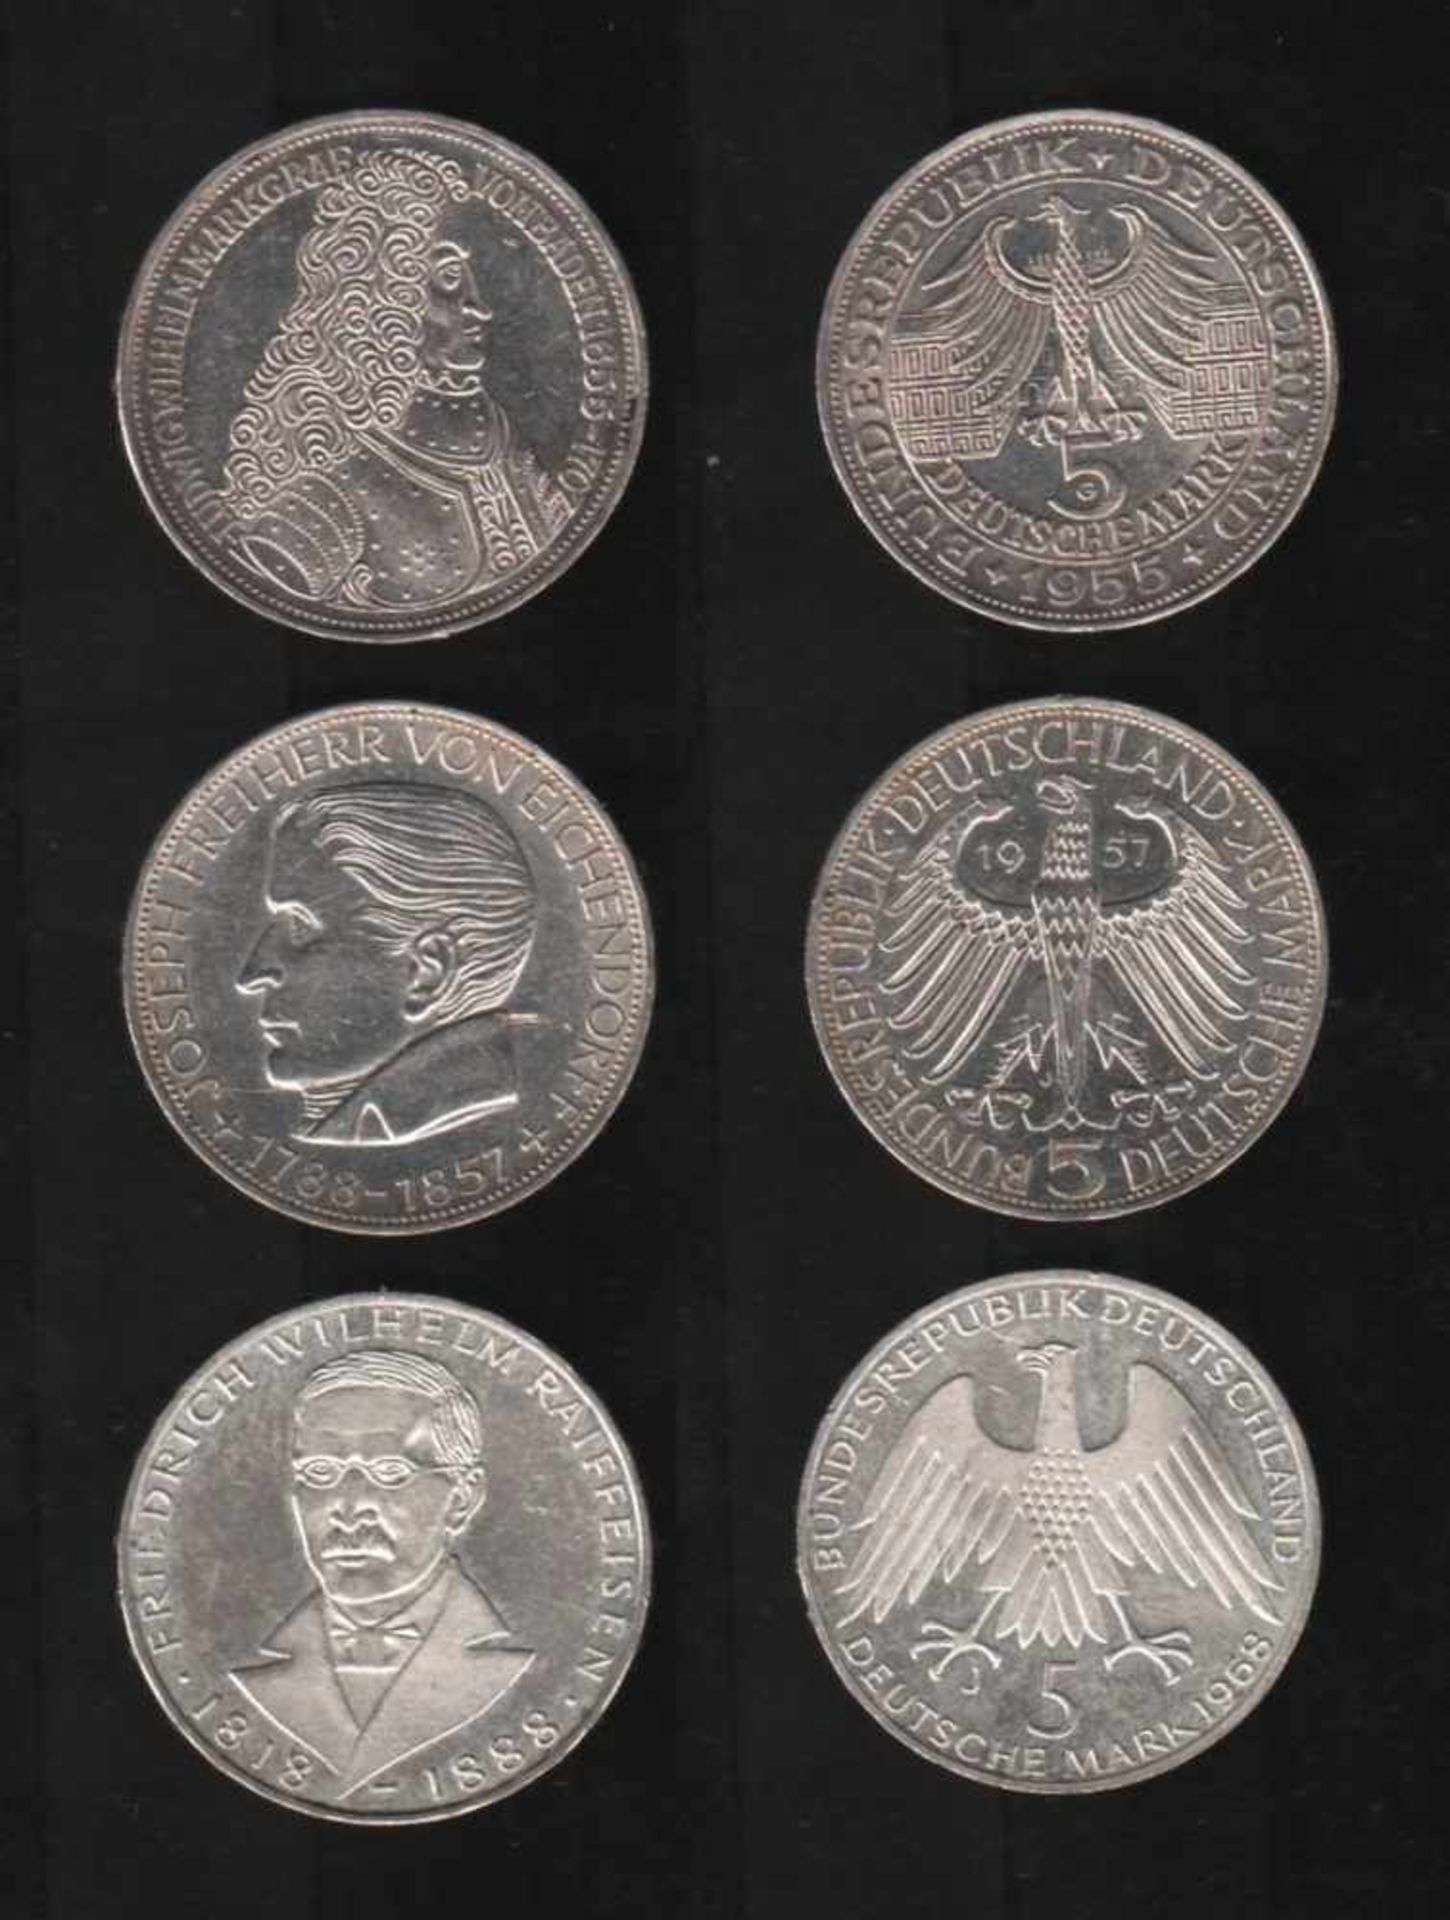 Deutschland. 3 Silbermünzen à 5 DM.Ludwig Wilhelm Markgraf von Baden, Joseph Freiherr von